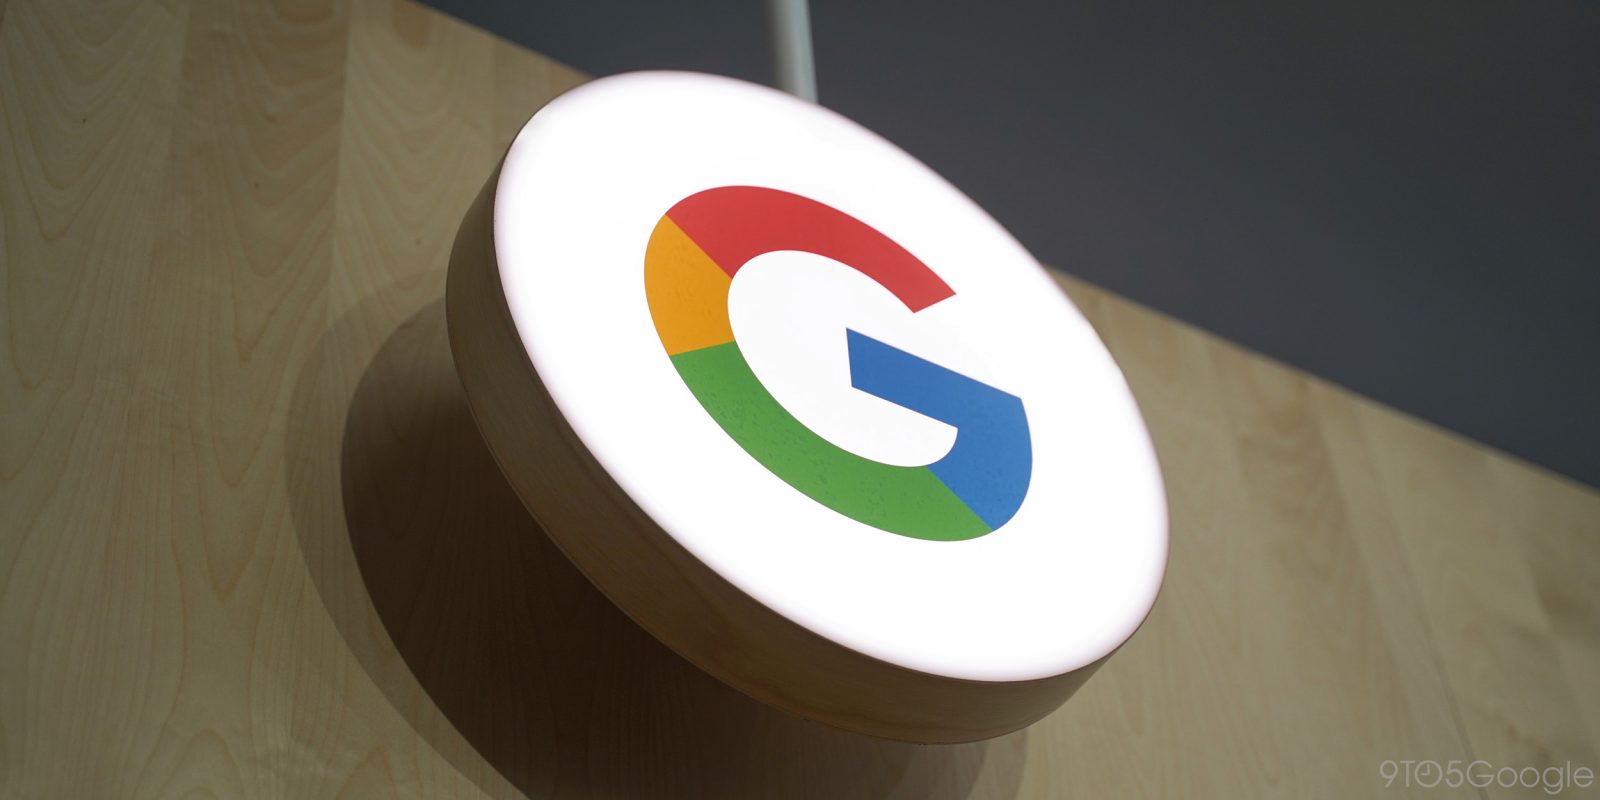 Γαλλία: Η Google υπέγραψε συμφωνία για να αμείβει τον γαλλικό Τύπο βάσει των συγγενικών δικαιωμάτων